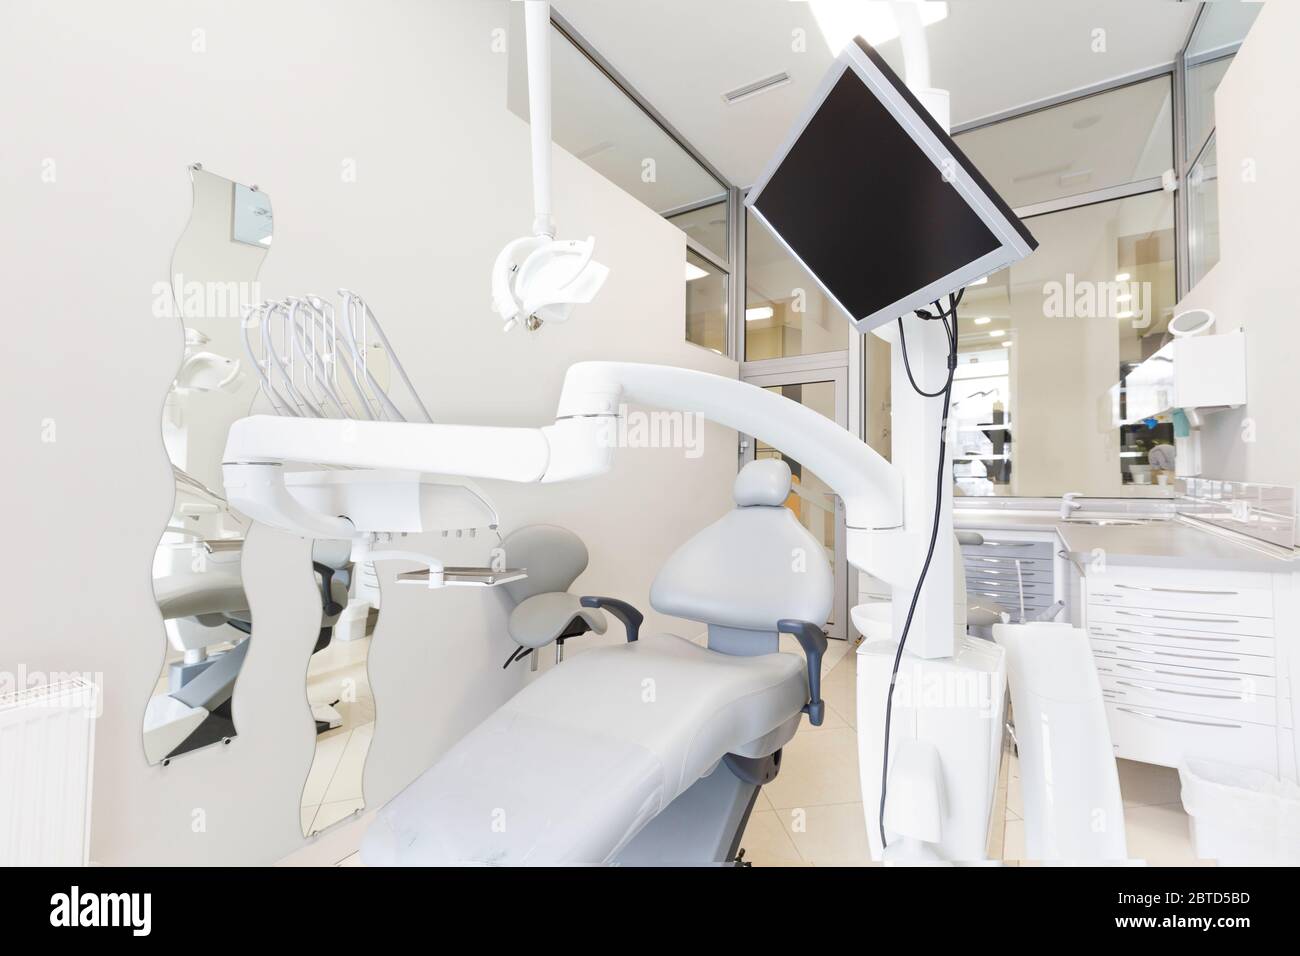 Plan de l'armoire de chirurgie de stomatologie avec équipement dentaire professionnel Banque D'Images